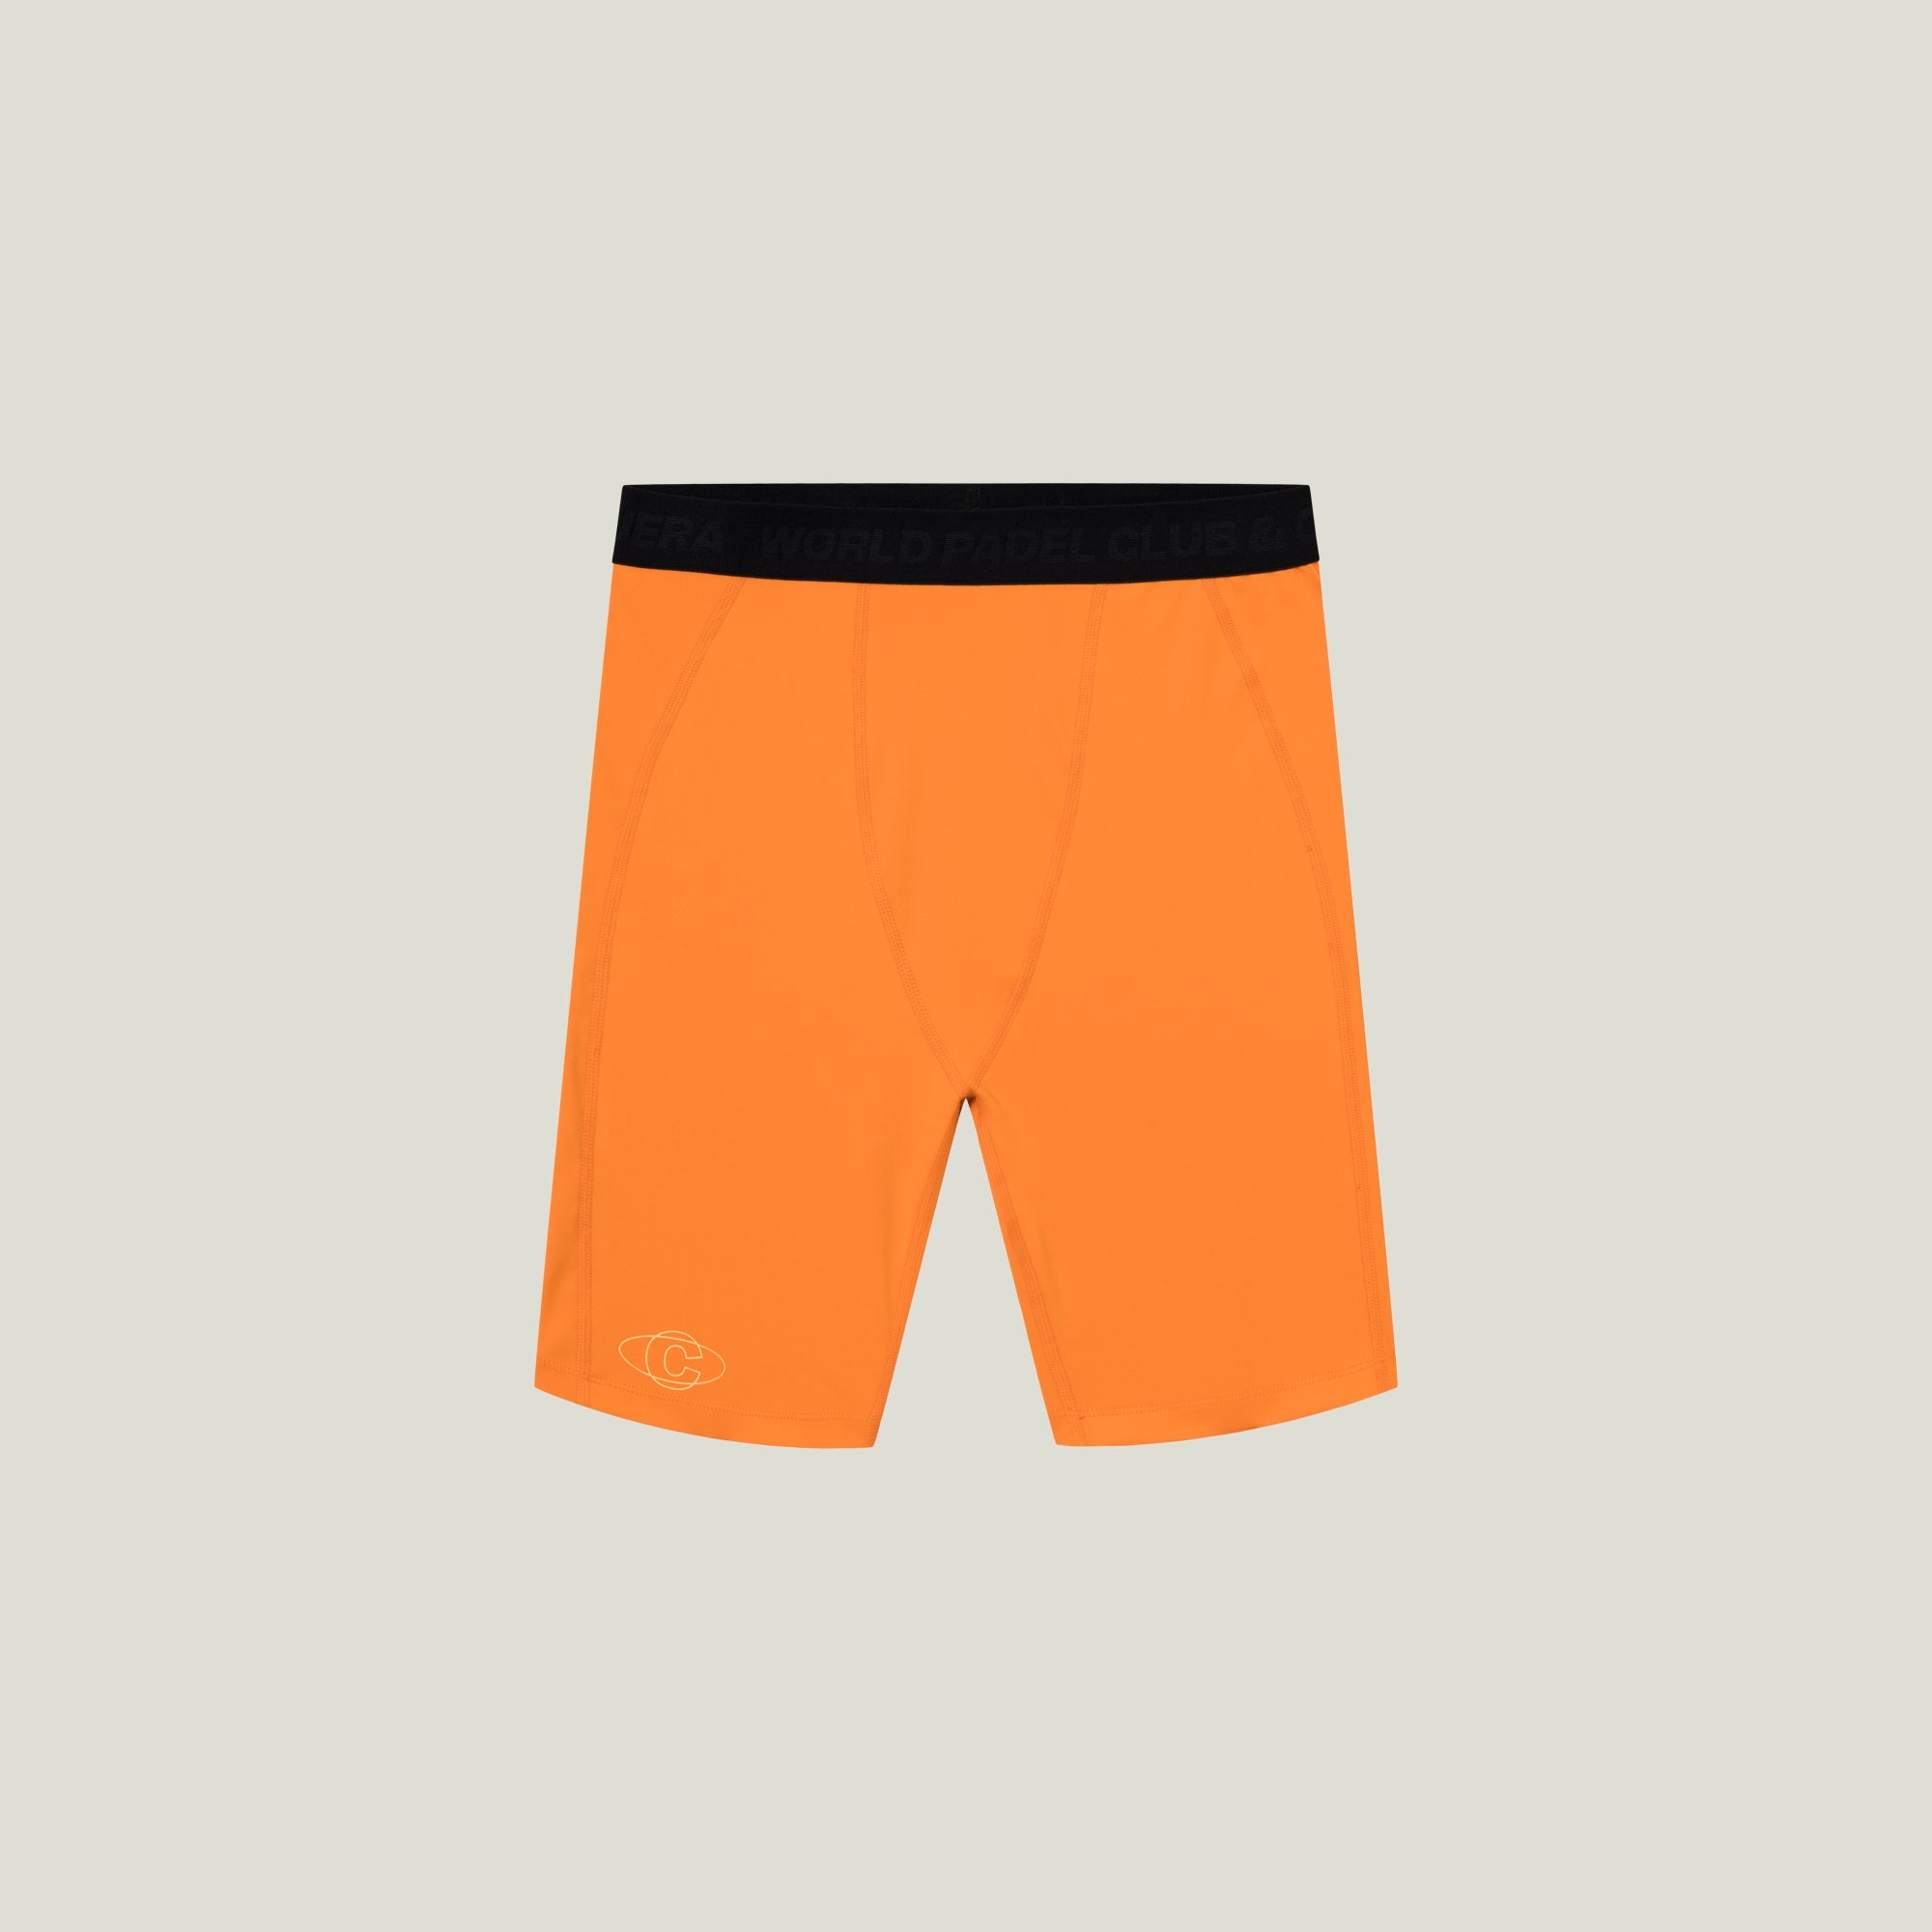 Cuera Oncourt Layer Tights (Orange) - M